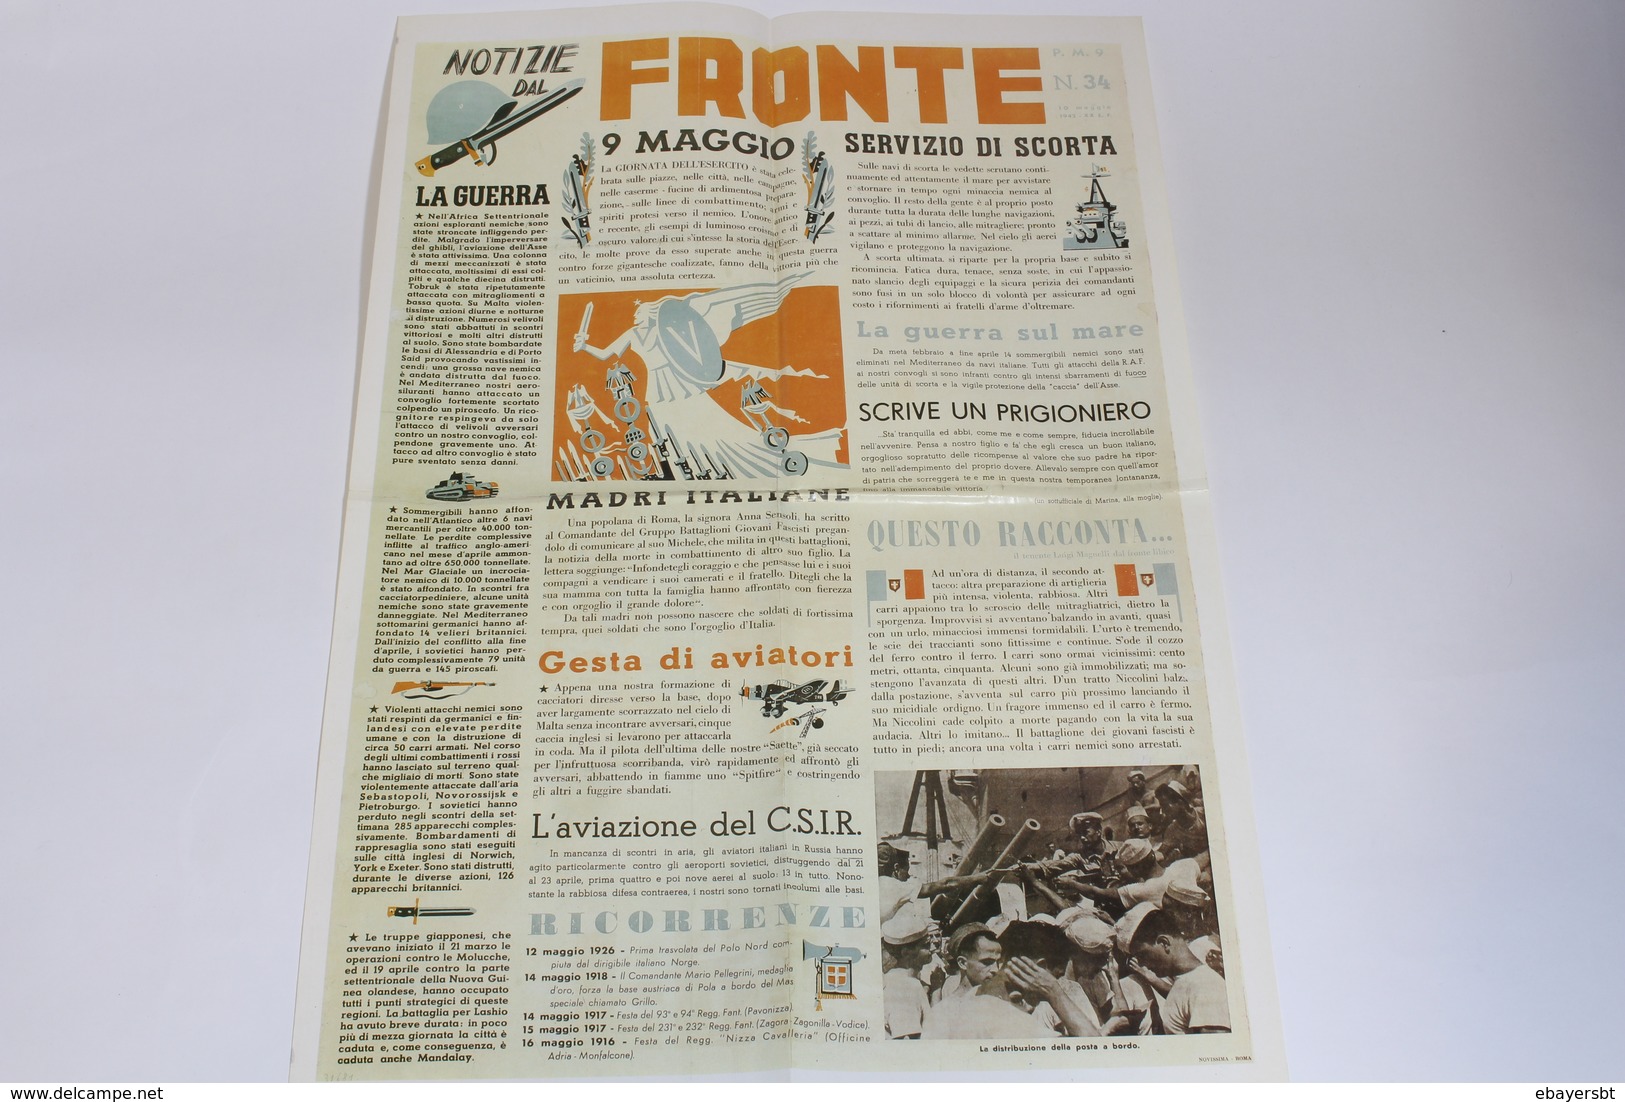 Lotto Manifesto Locandina Propaganda 2° Guerra Mondiale Fascismo 35x50 riproduzioni collezione storia vintage 12 pezzi